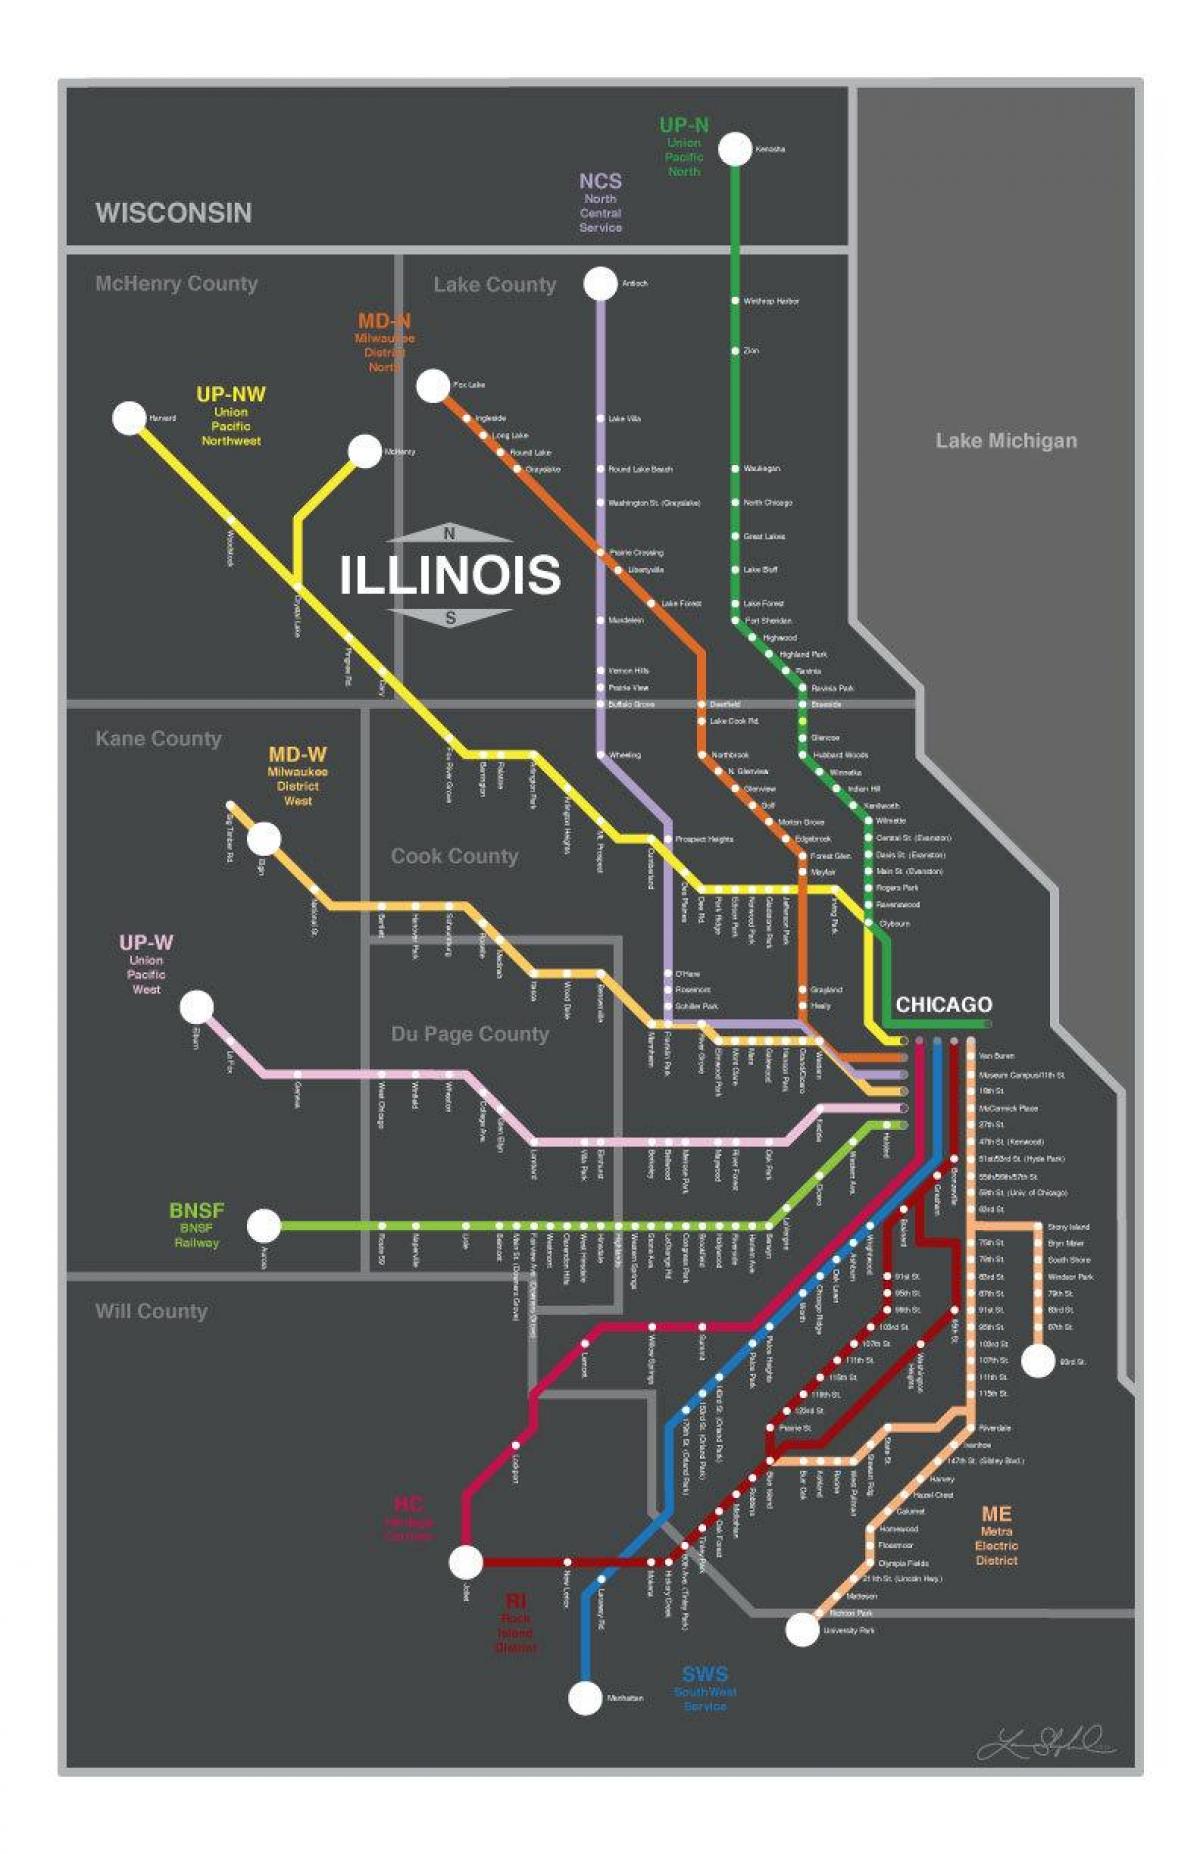 metra ramani Chicago